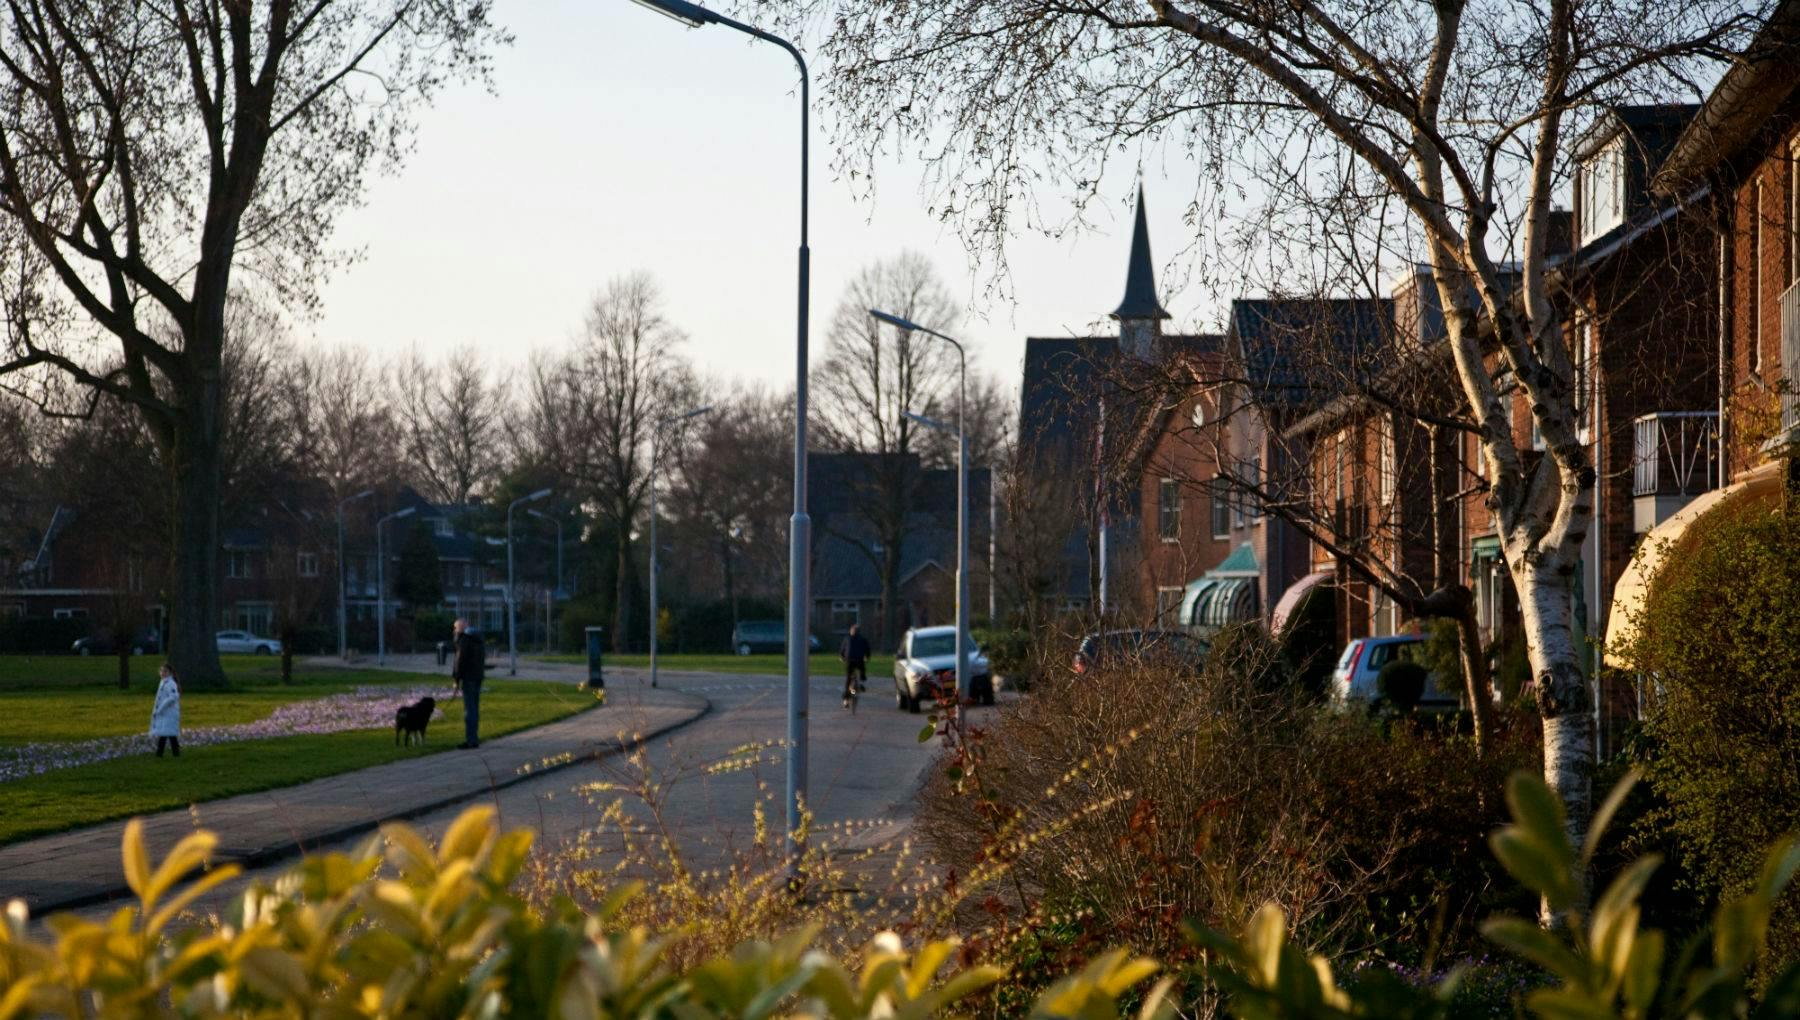 Living in Haarlemmermeer, Aalsmeer and Uithoorn